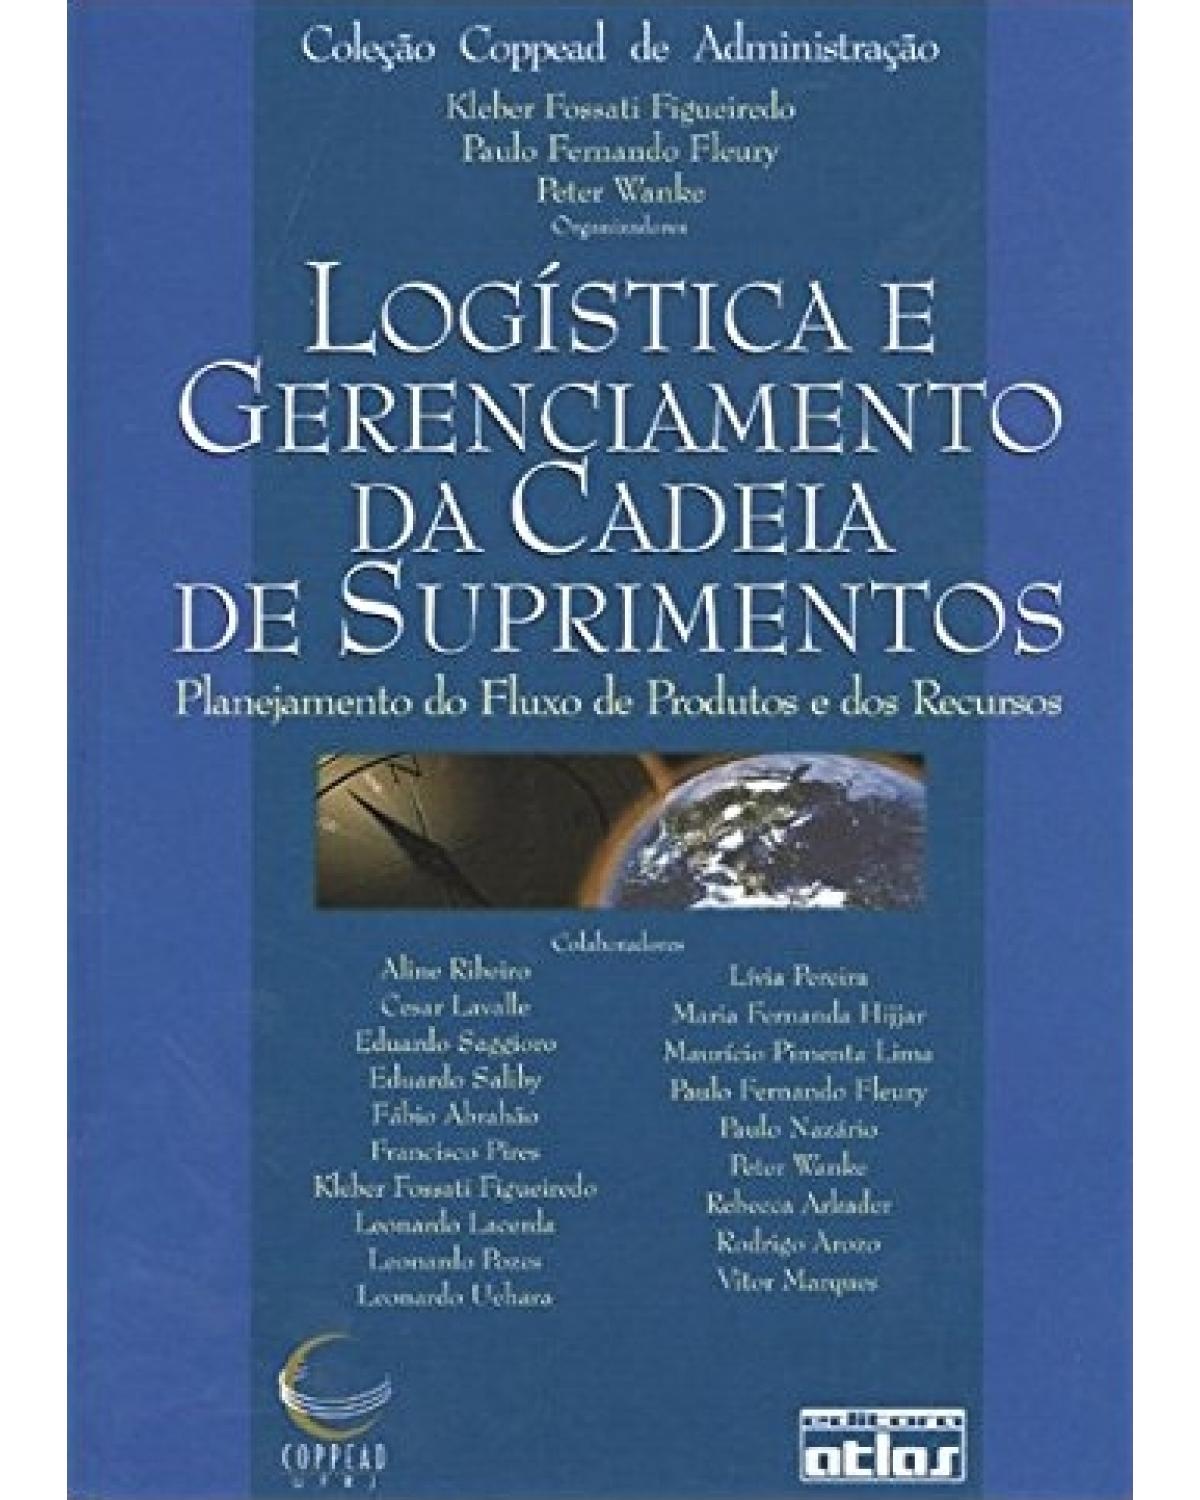 Logística e gerenciamento da cadeia de suprimentos - Planejamento do fluxo de produtos e dos recursos - 1ª Edição | 2003